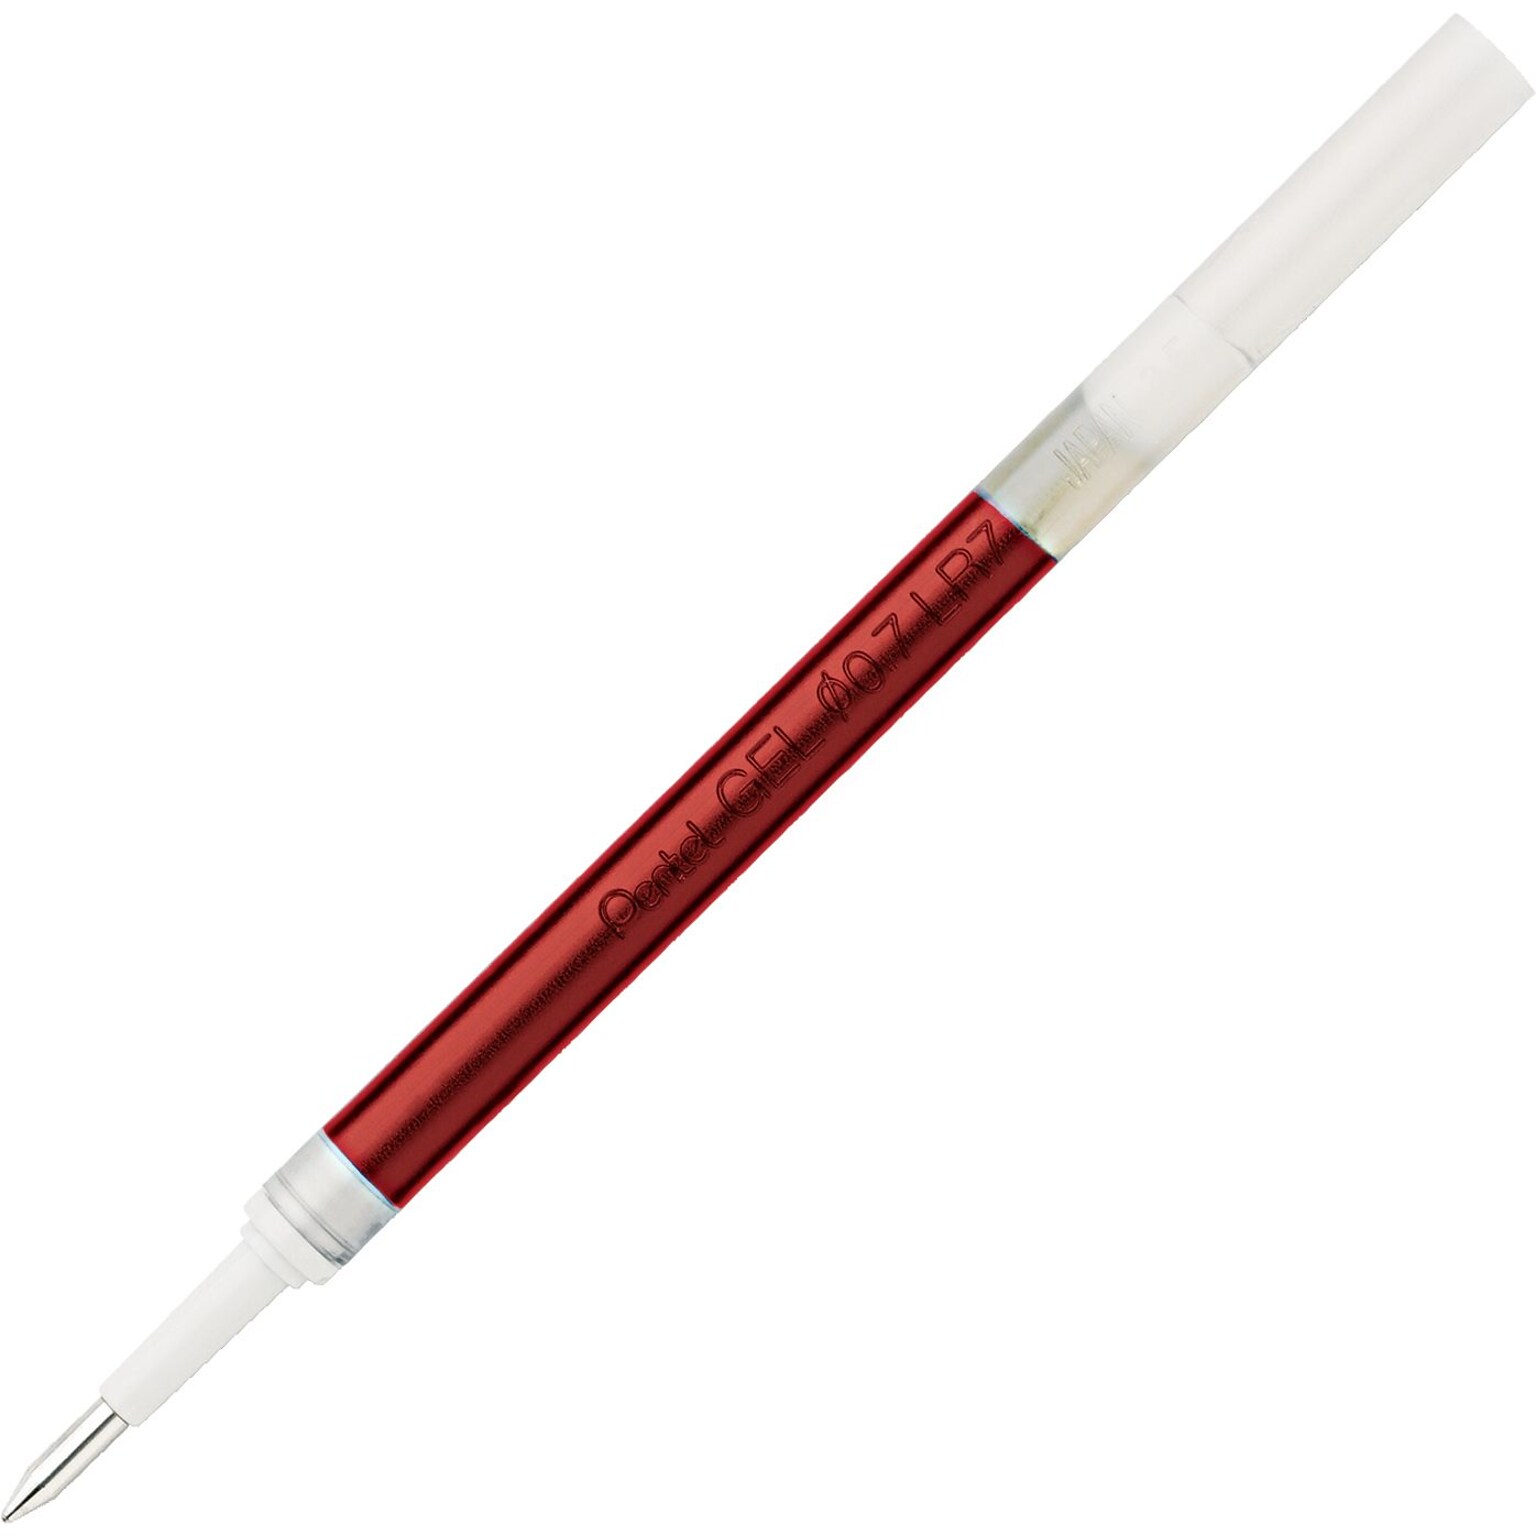 Pentel Energel Gel Pen Refill, Medium Point, Red Ink (PENLR7B)